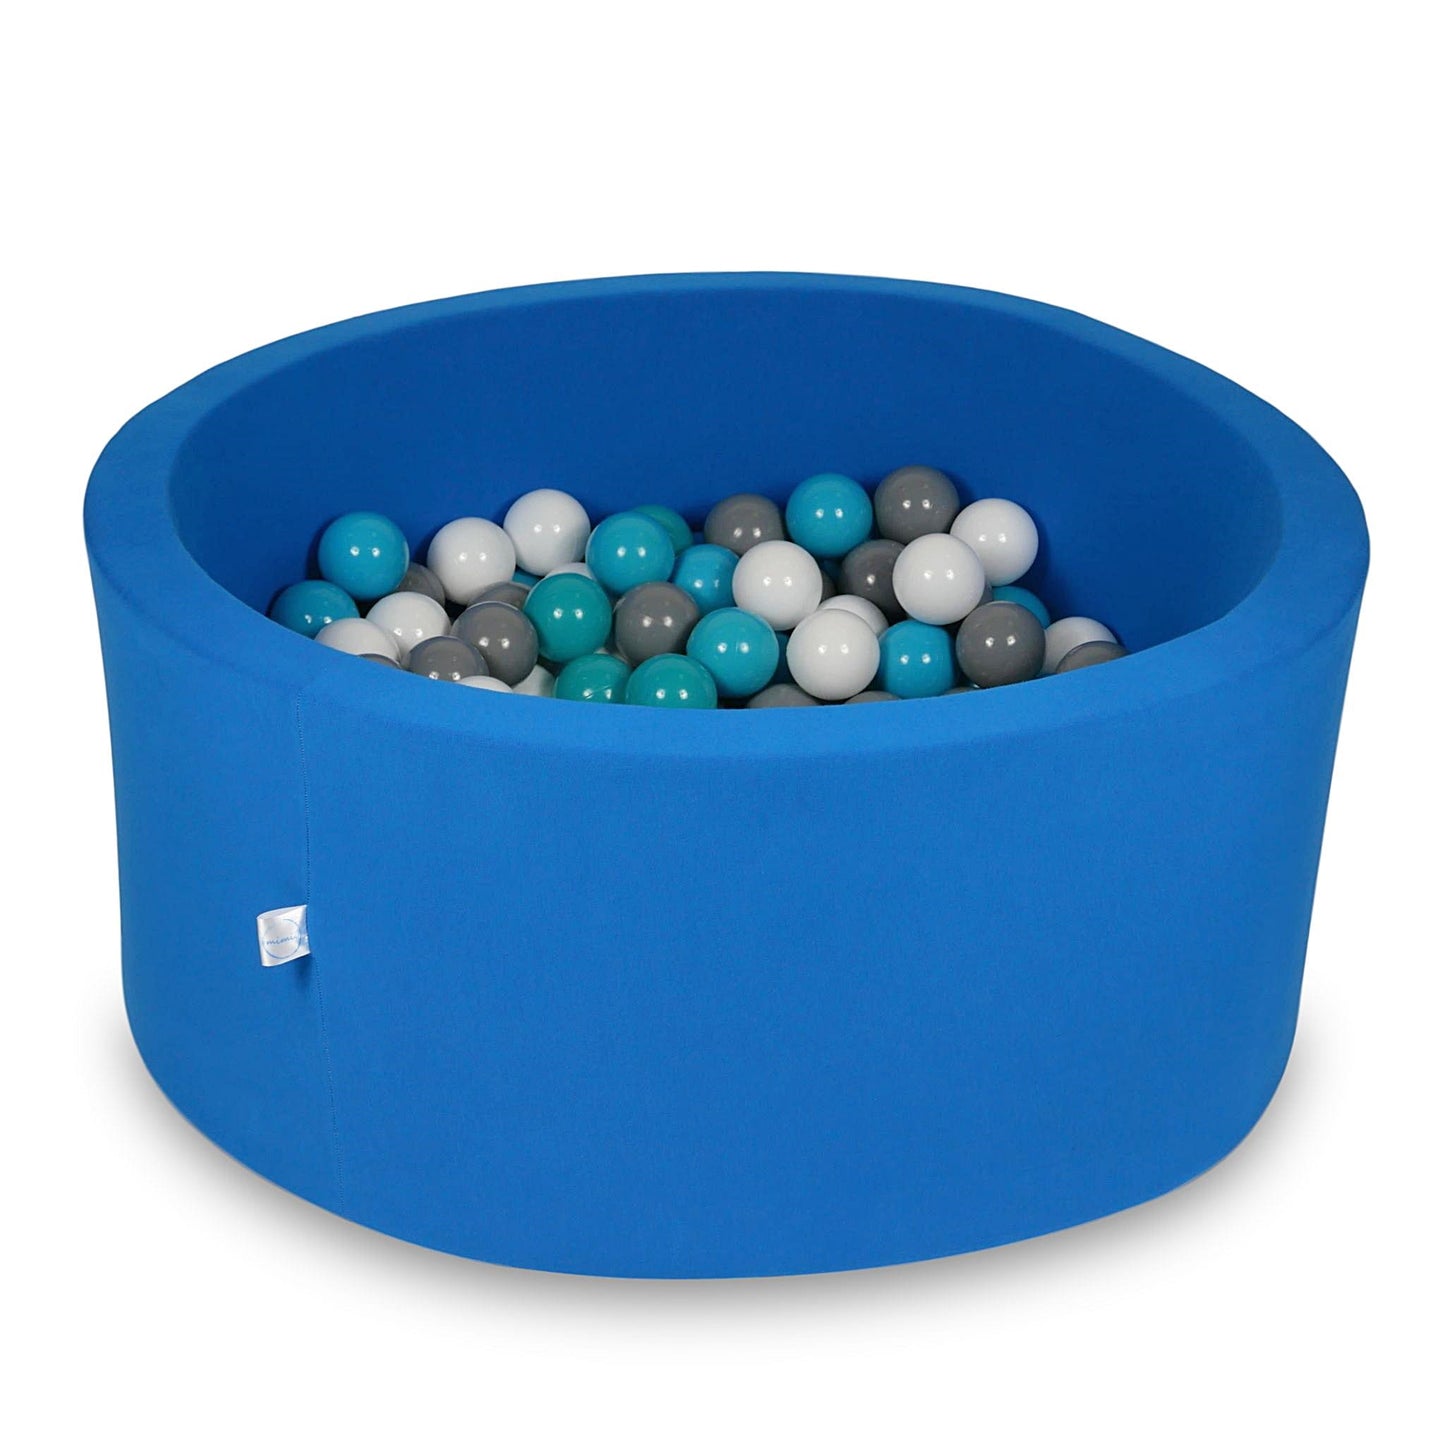 Piscine à Balles 90x40cm bleue avec balles 300pcs (blanc, gris, turquoise)